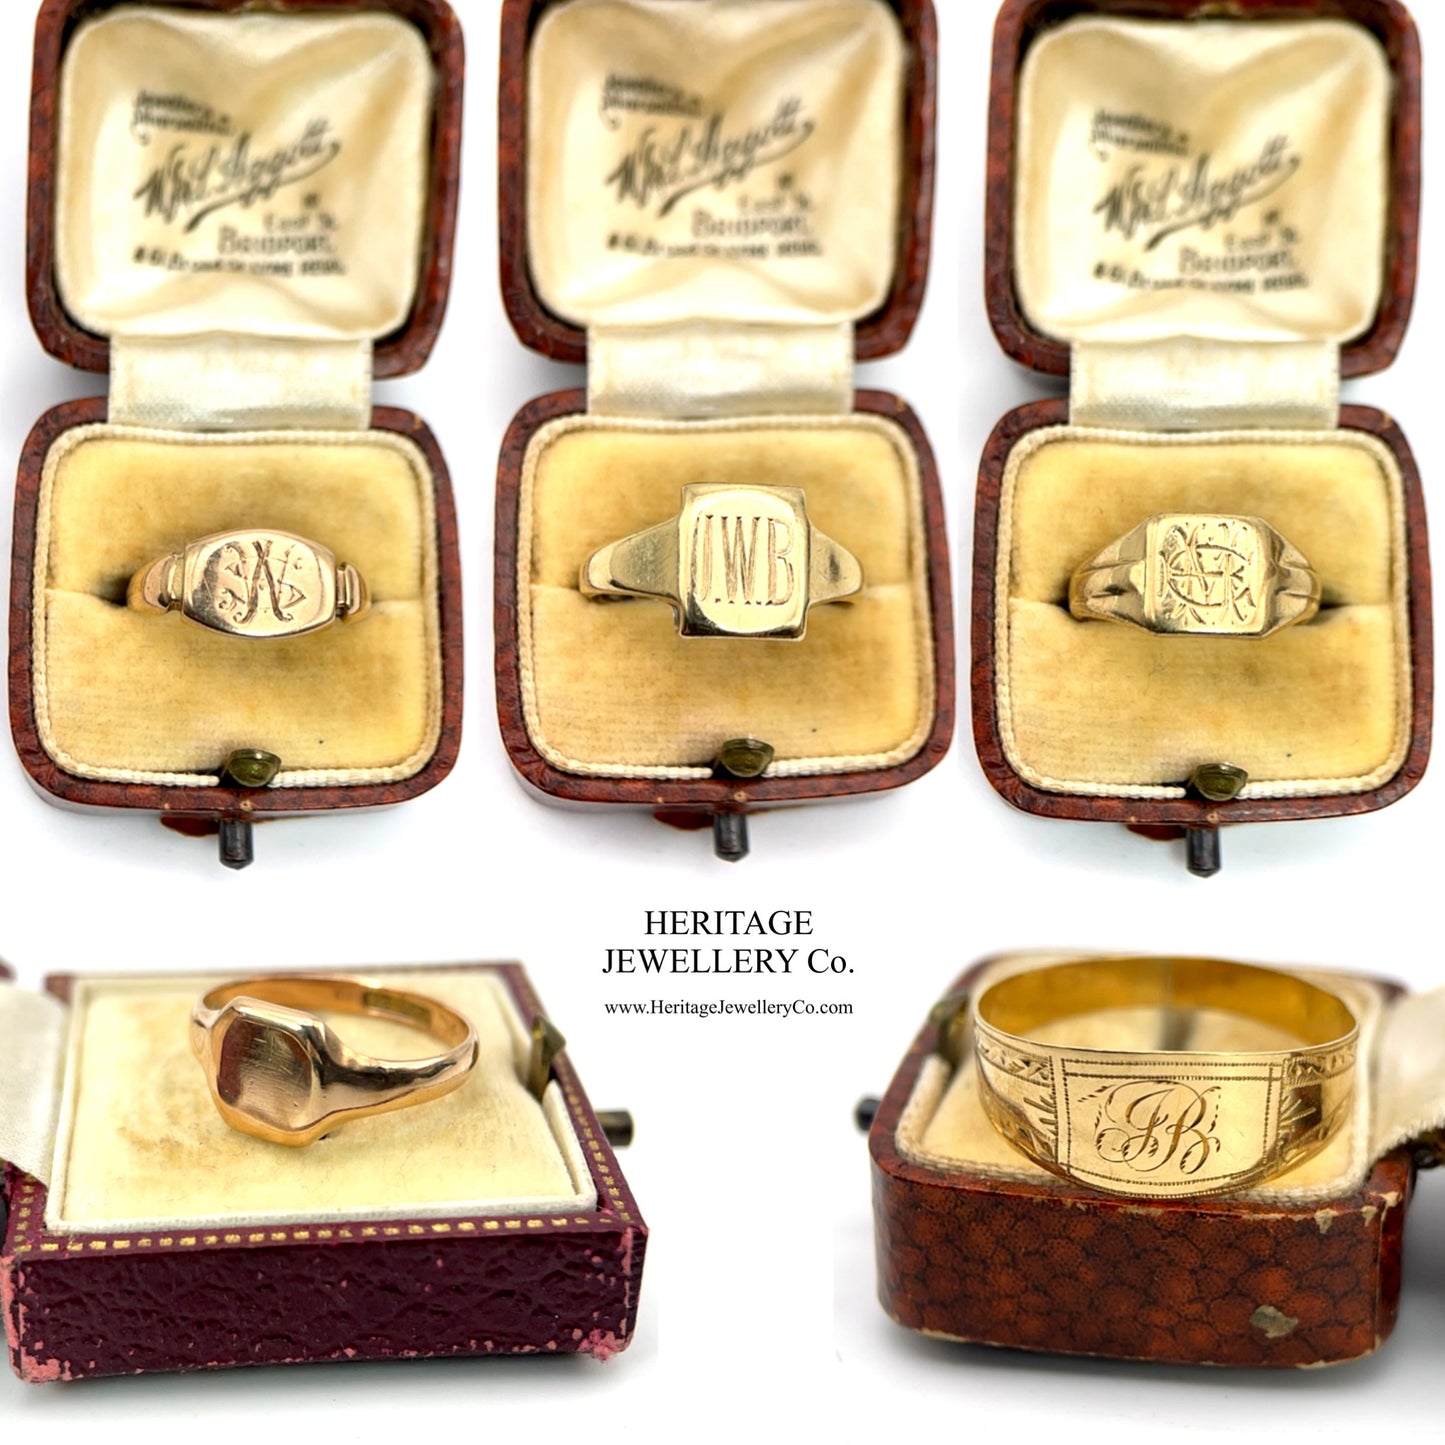 Antique Rose Gold Square Signet Ring (c. 1915)